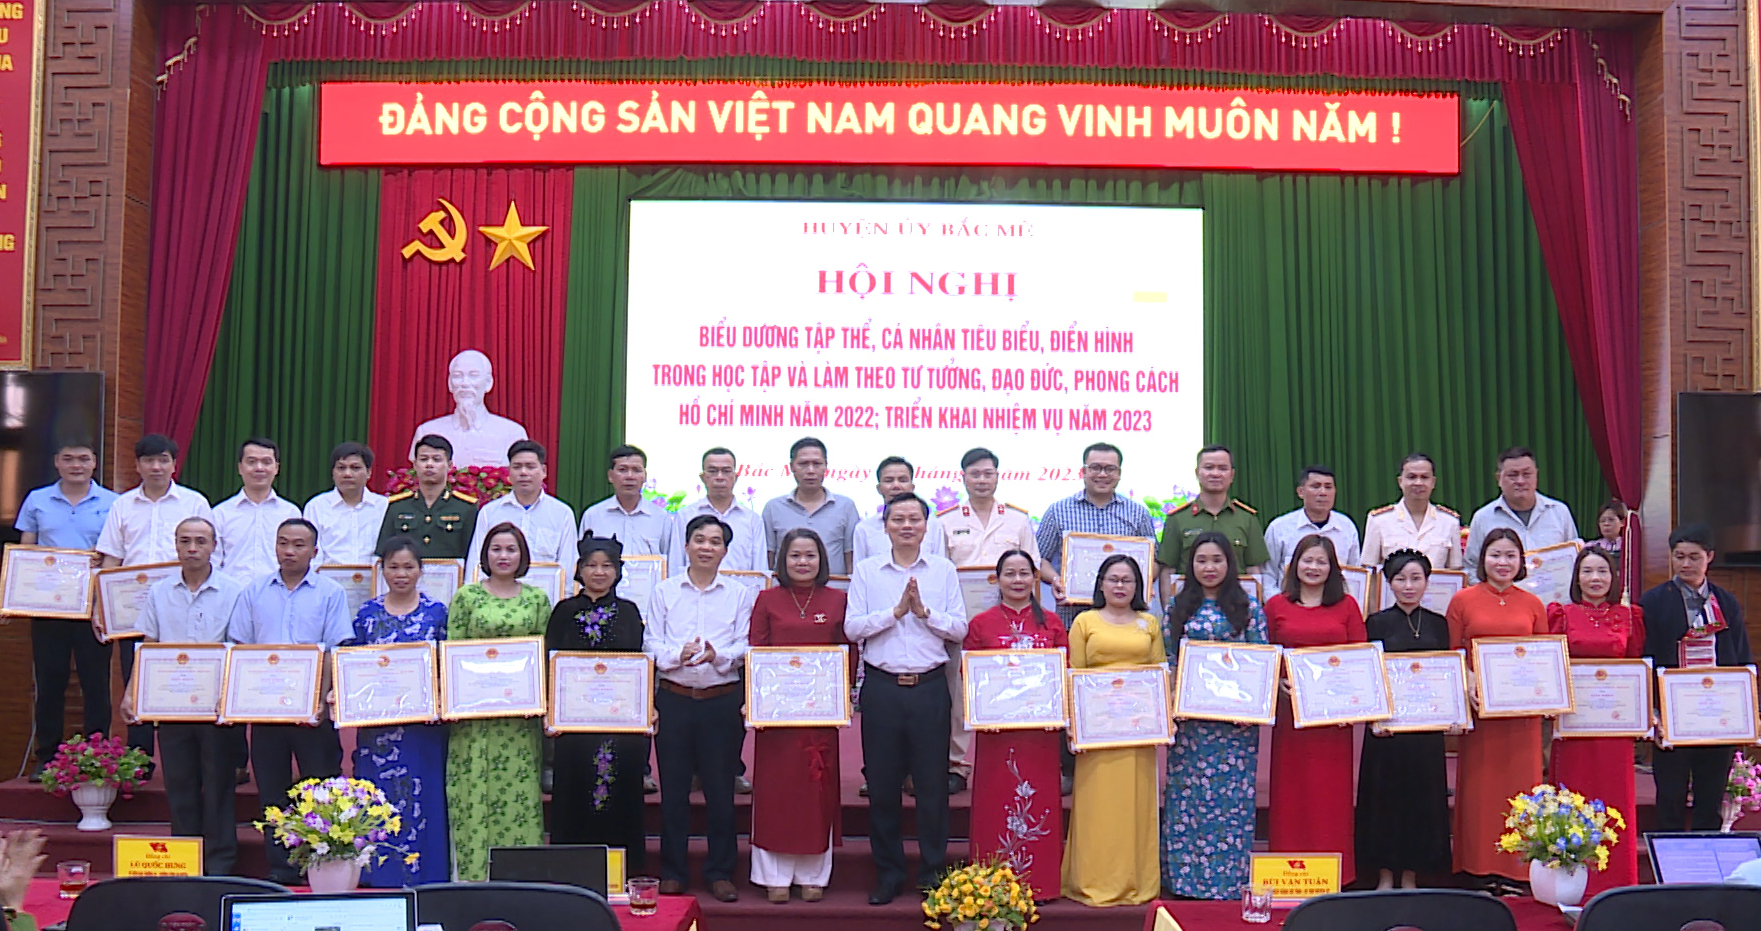 Lãnh đạo huyện Bắc Mê trao Giấy khen cho các tập thể có thành tích xuất sắc trong Học tập và làm  theo tư tưởng, đạo đức, phong cách Hồ Chí Minh năm 2022.
